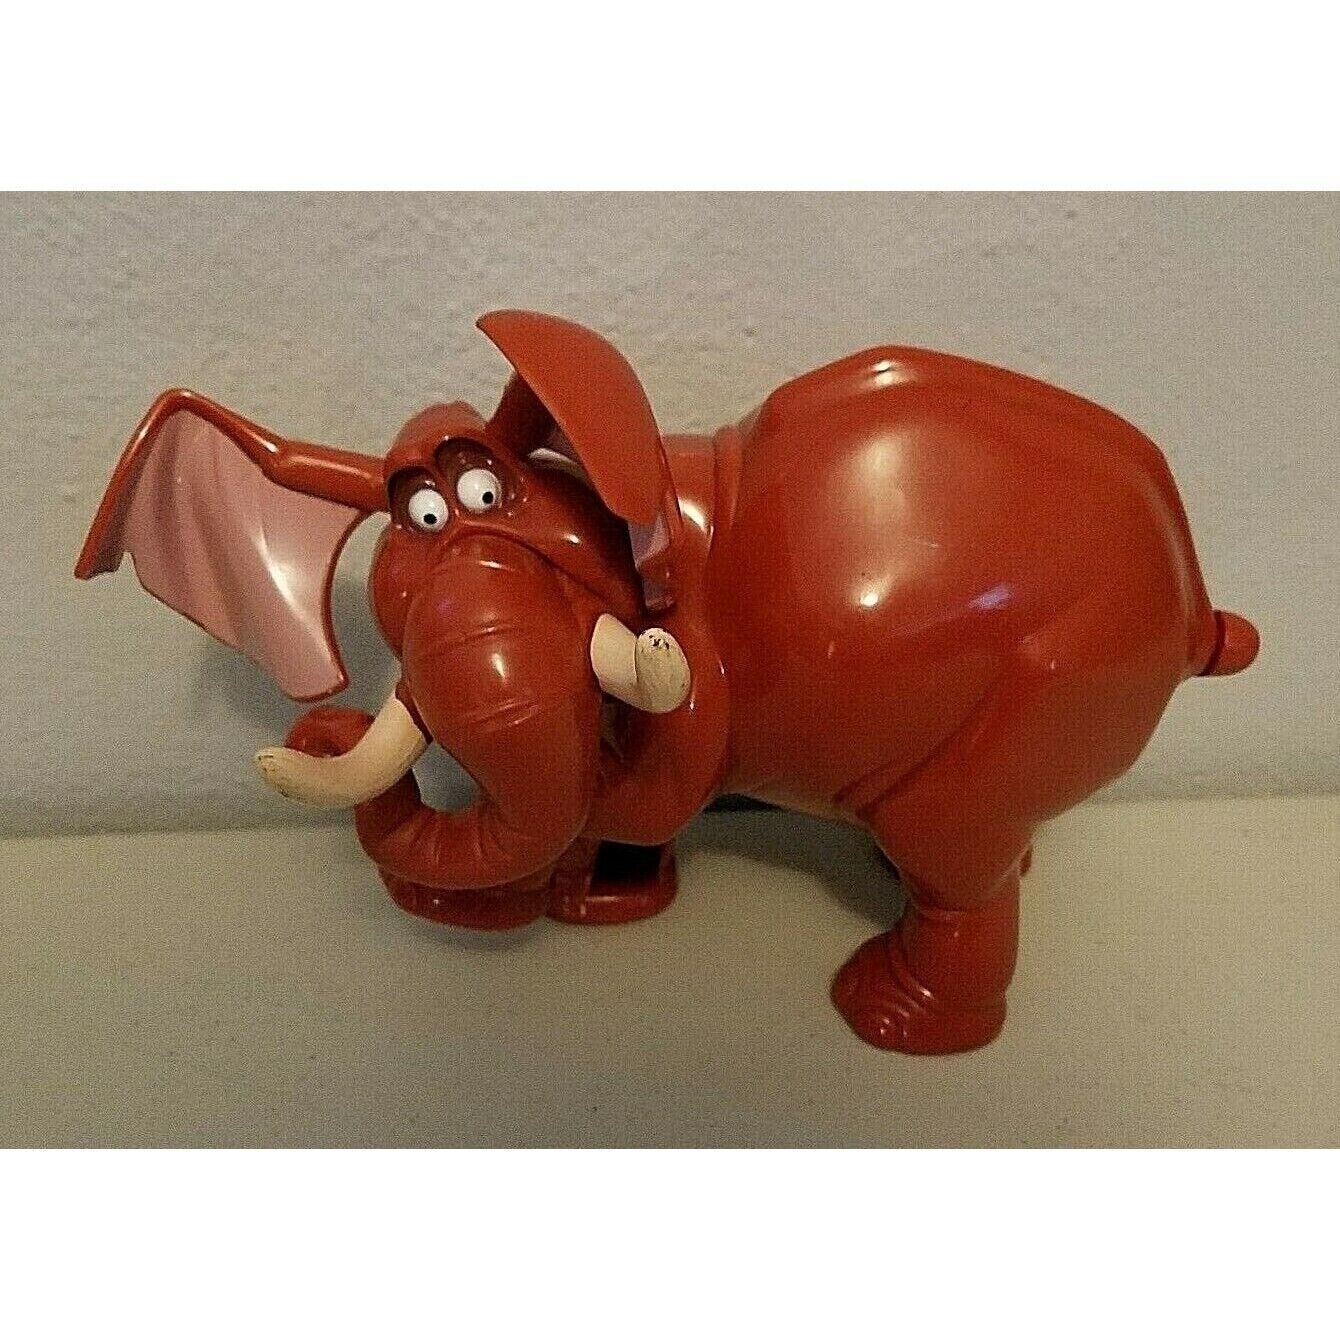 Tarzan Elephant Toy Tantor Wind Up Vintage Walt Disney Works - $7.97